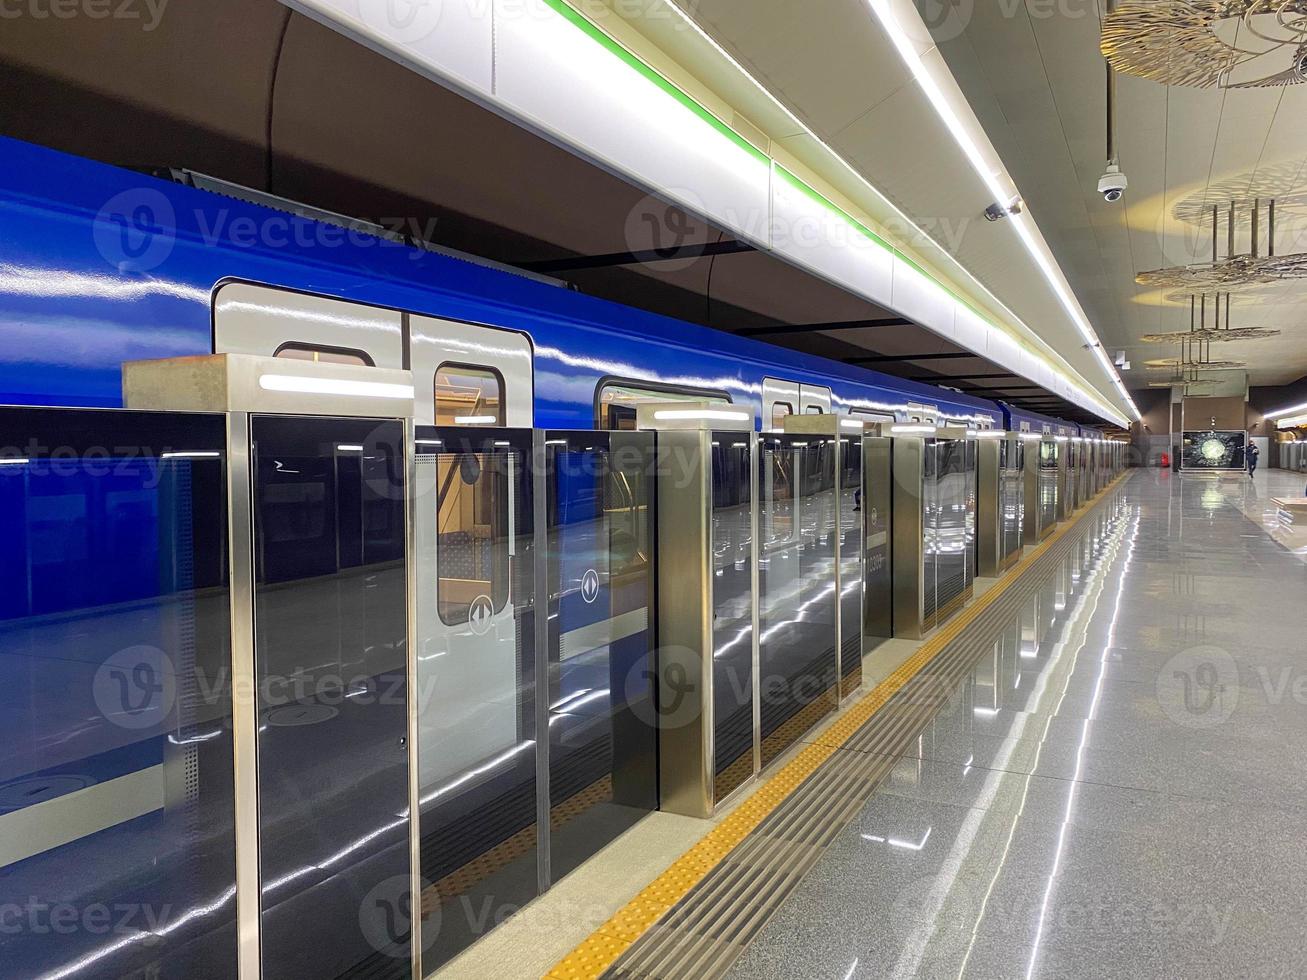 nouvelle rame de métro moderne bleue à grande vitesse rapide et sûre dans la grande ville sur la plate-forme d'attente à la station de métro de la gare photo